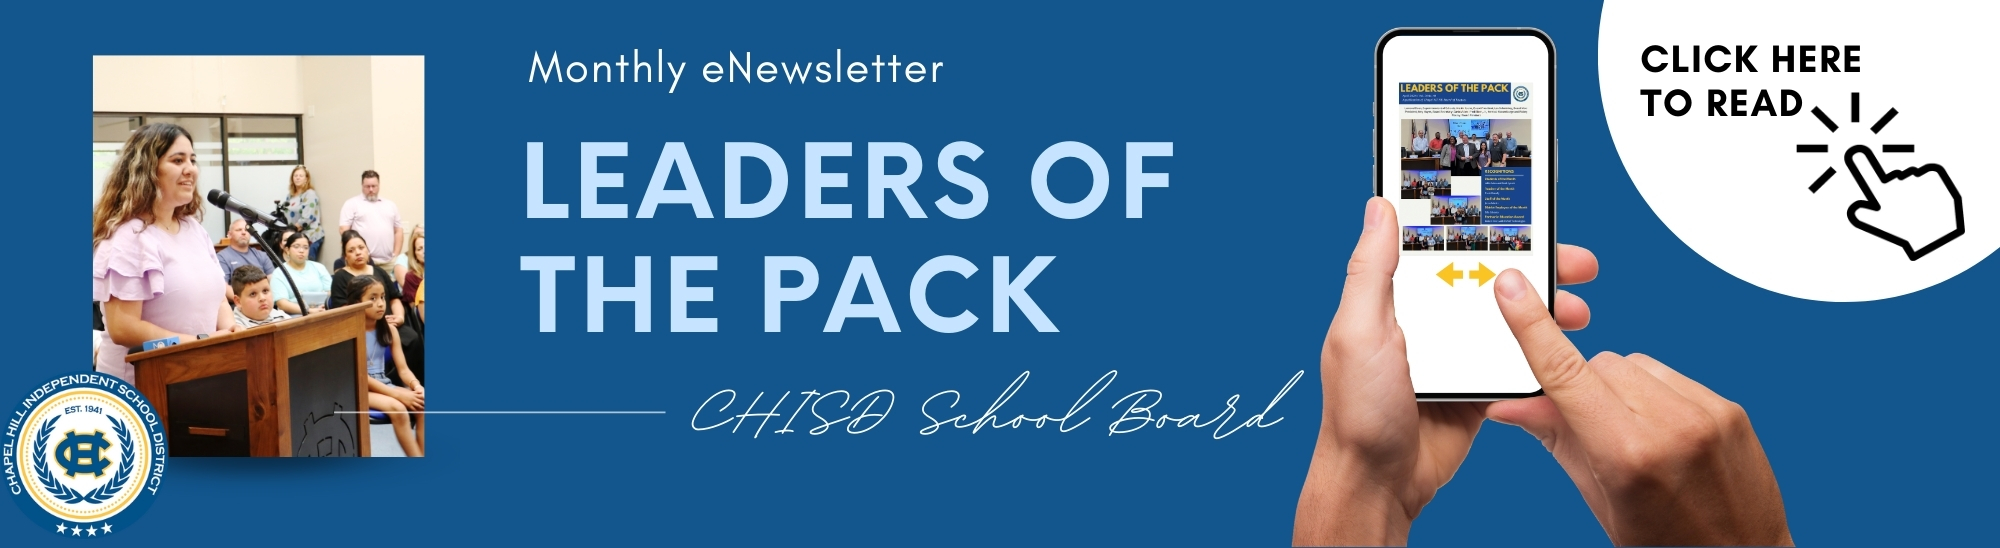 eNewsletter: Leader of the Pack Newsletter 